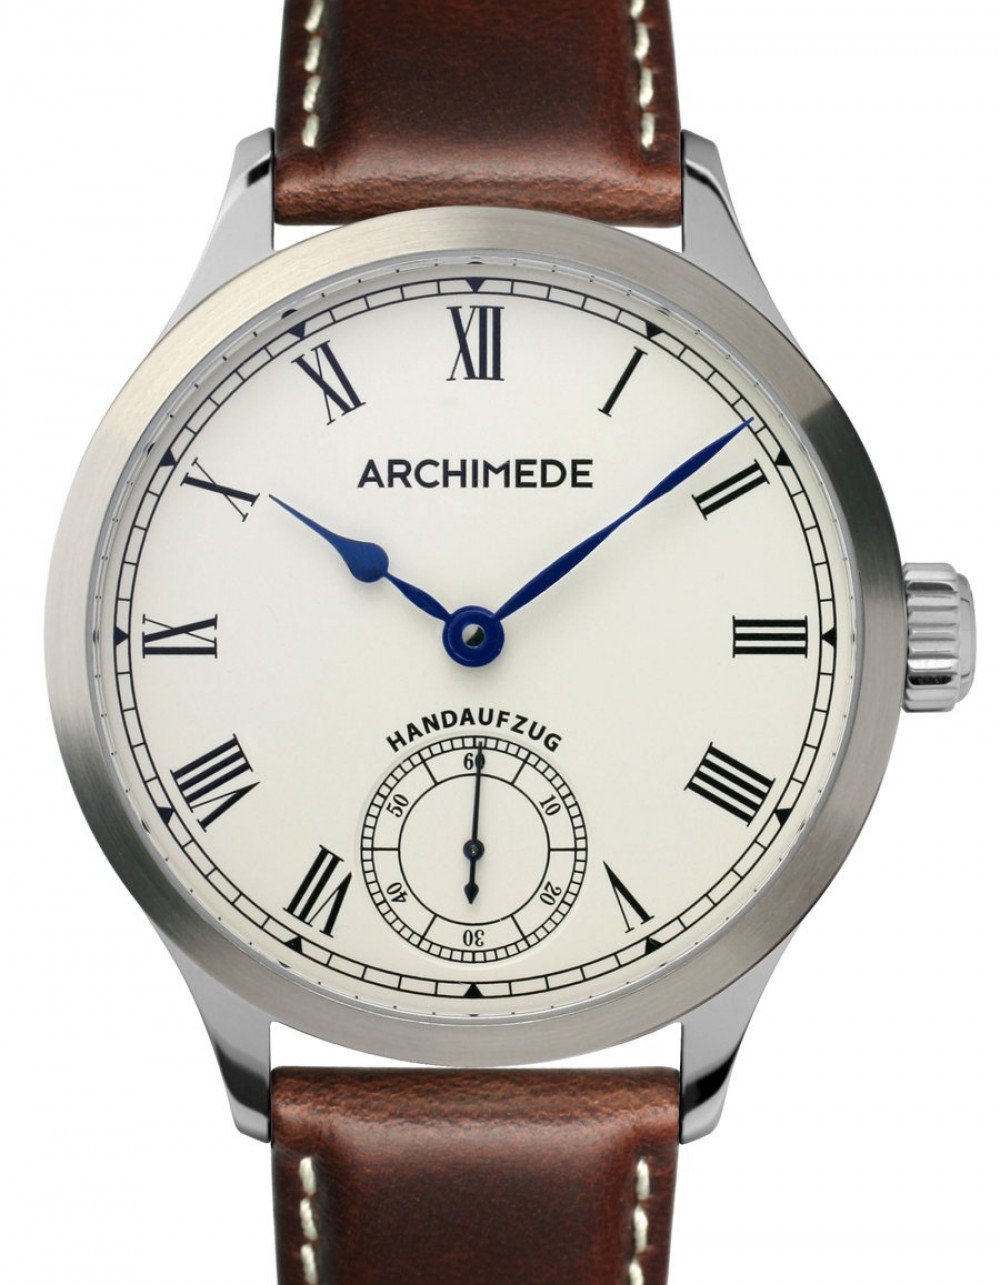 Zegarek firmy Archimede, model DeckWatch